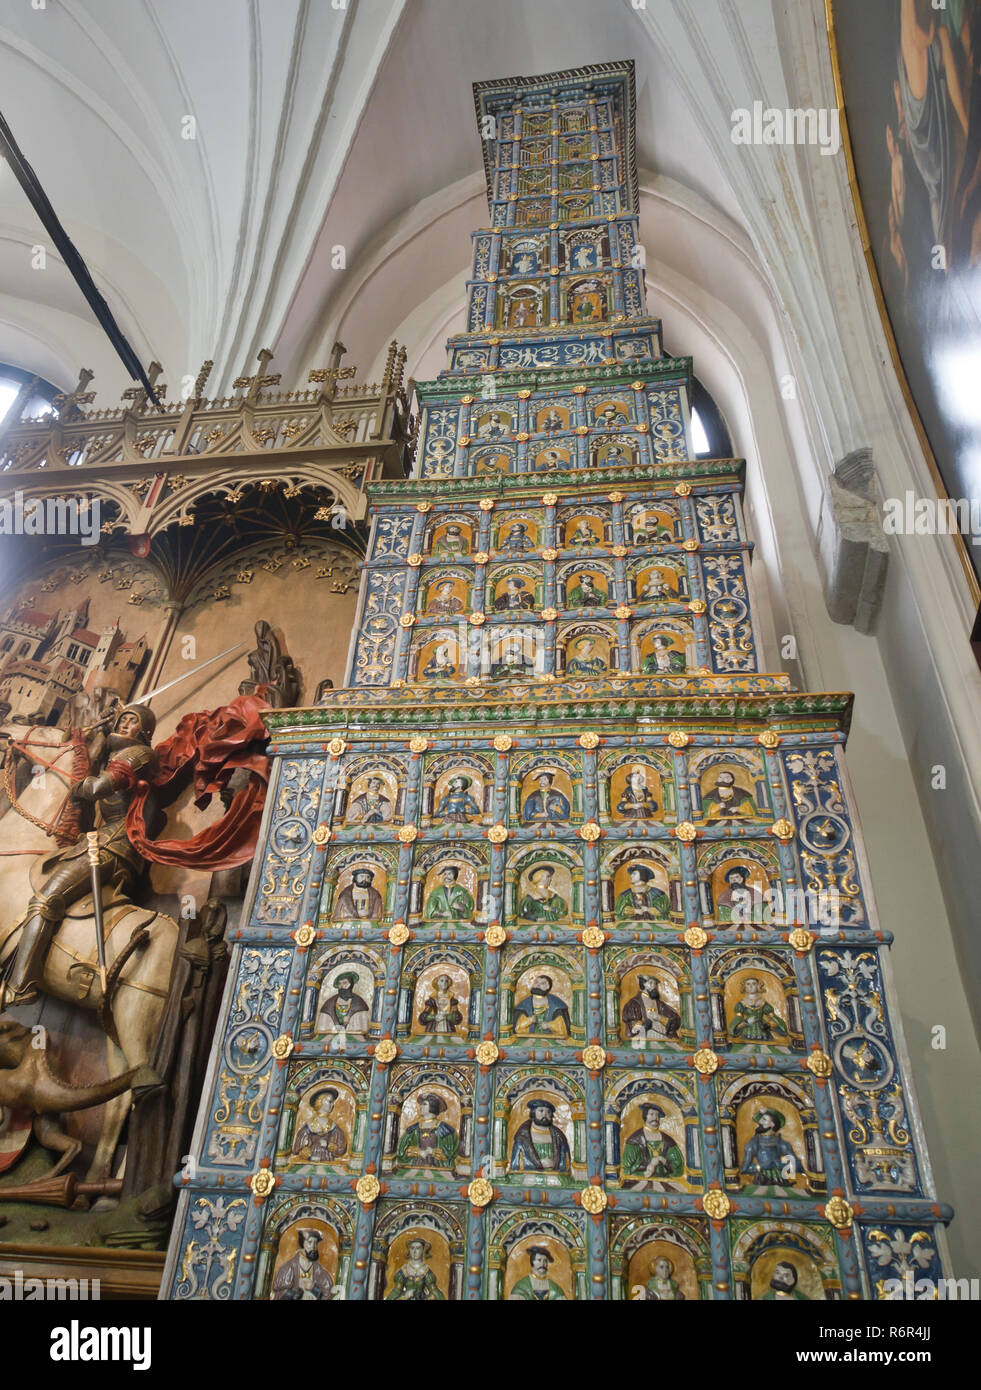 A Artus Court Museum en Gdansk, Polonia, una visita obligada para los turistas, vista interior del gigante estufa de azulejos y decorado con coloridos azulejos Foto de stock